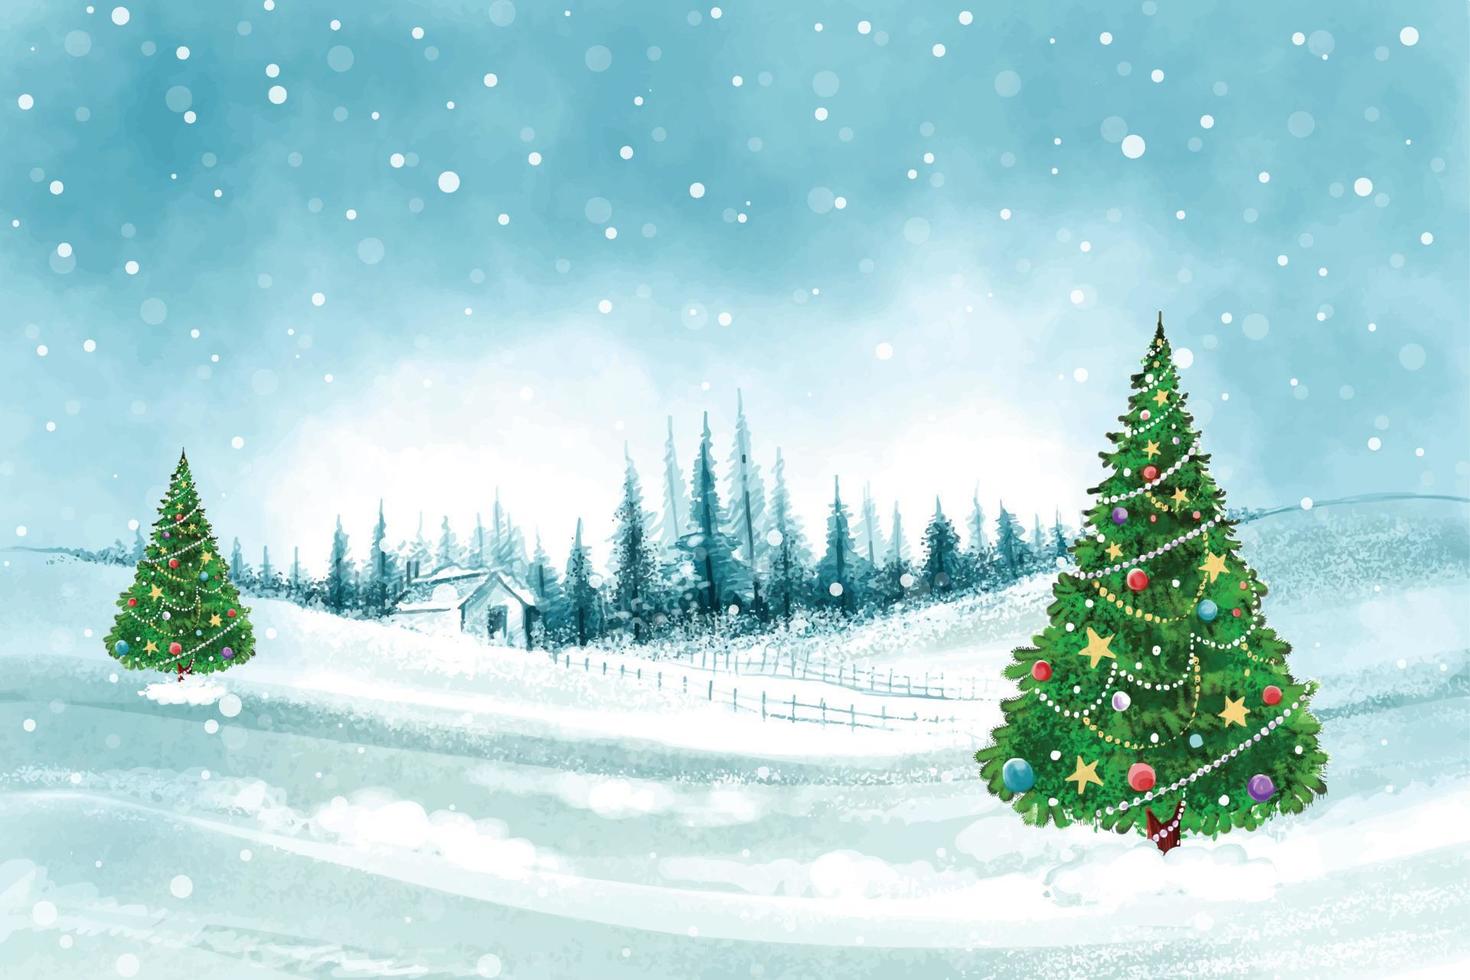 Impresionantes árboles de Navidad en paisaje invernal con fondo de tarjeta de nieve. vector